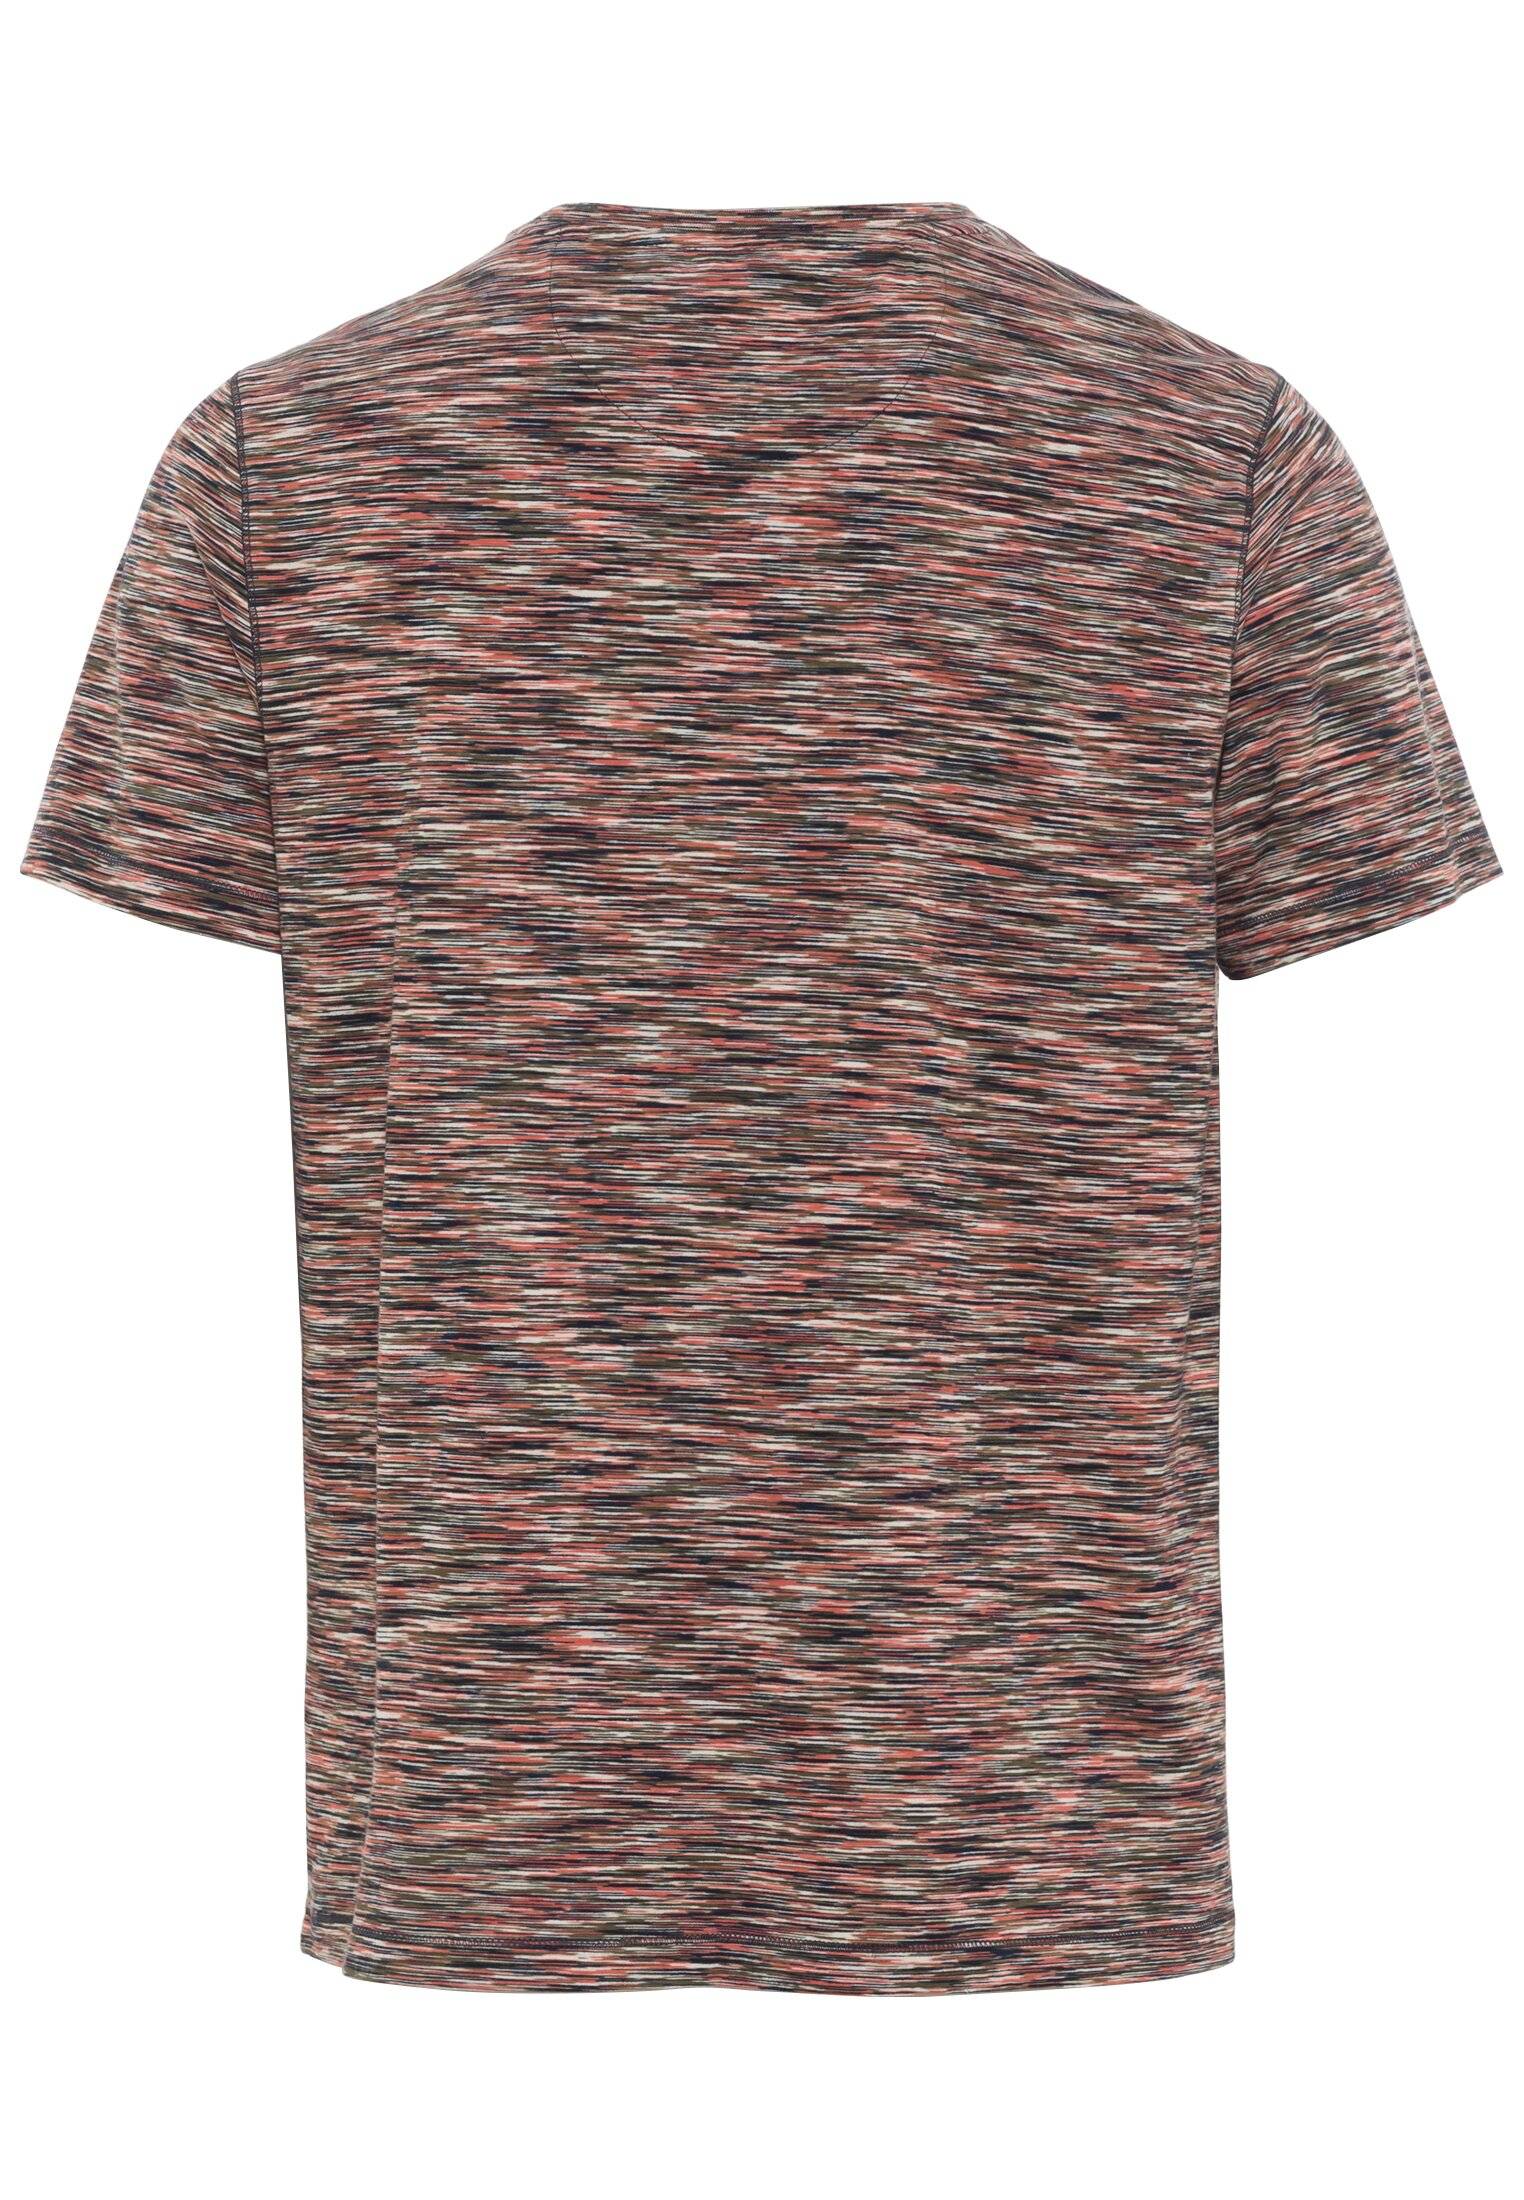 Мужская футболка Camel Active, коралловая, цвет коралловый, размер 52 - фото 2